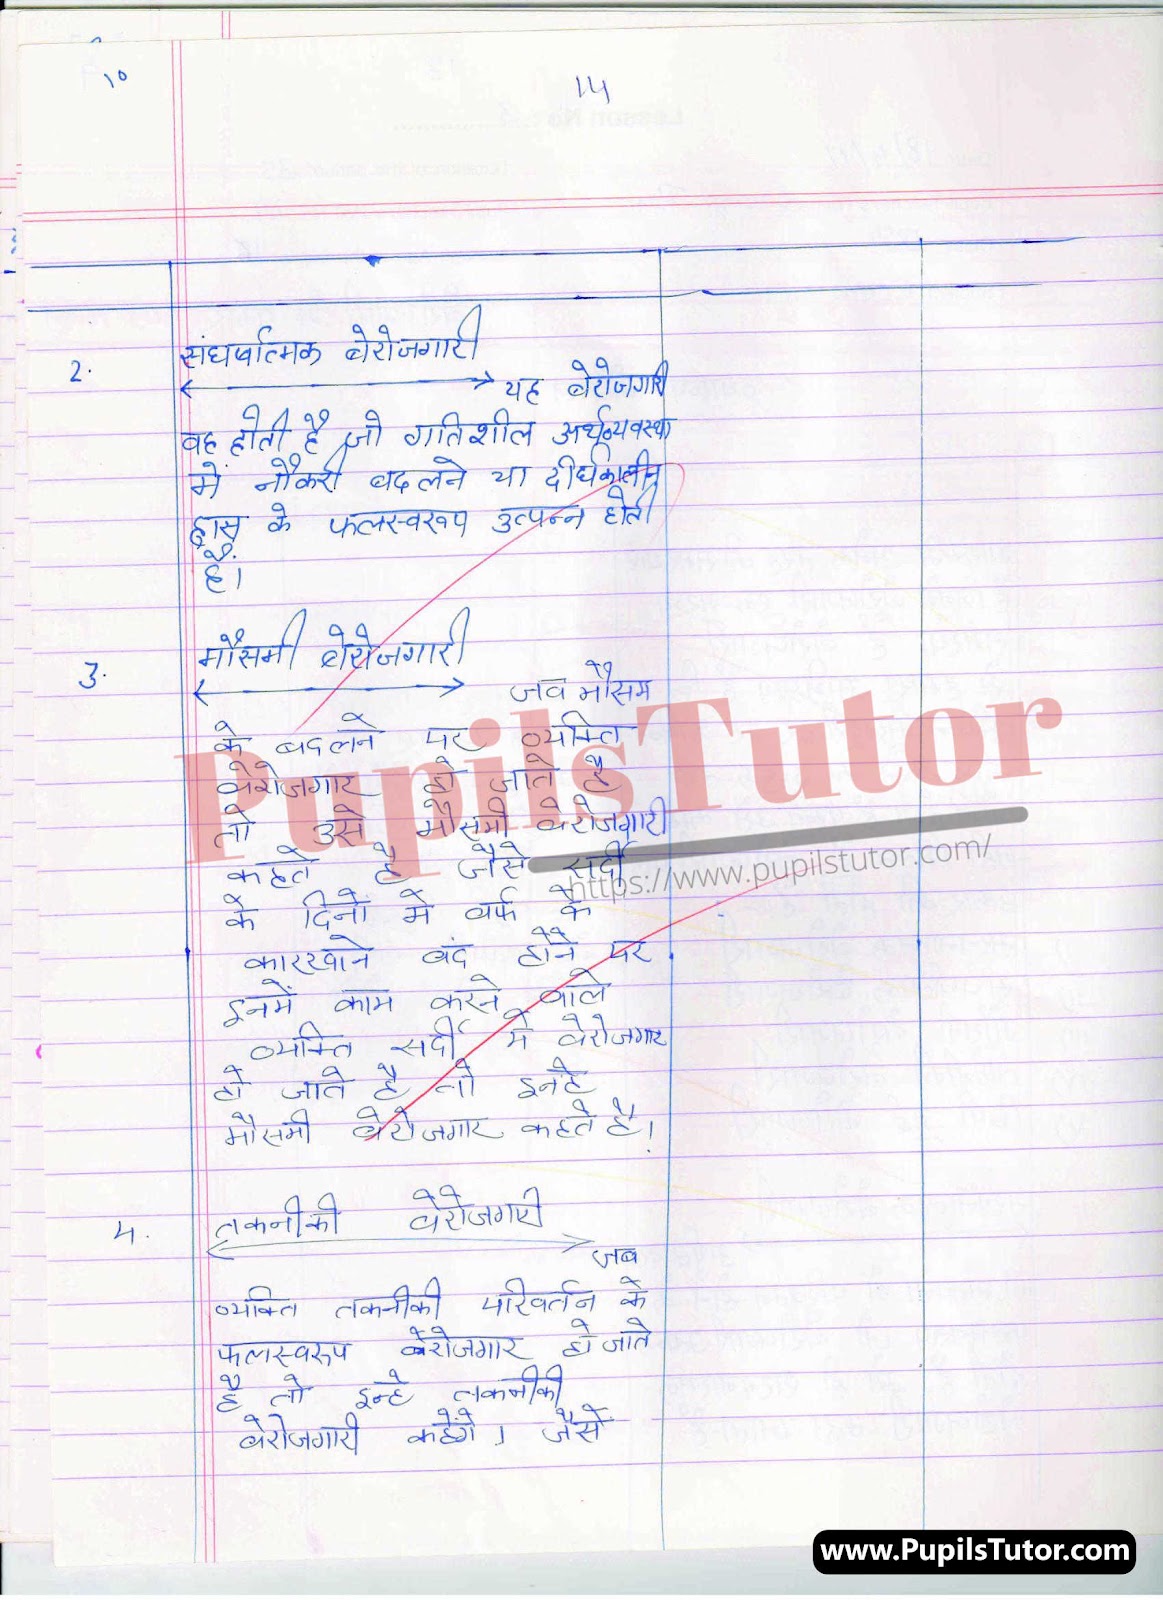 Micro Teaching Skill Of Illustration With Example Berojgari Ke Prakar Lesson Plan For B.Ed And Deled In Hindi Free Download PDF And PPT (Power Point Presentation And Slides) | बीएड और डीएलएड के लिए सूक्षम शिक्षण दृश्टान्त कौशल पर बेरोजगारी के प्रकार कक्षा 9 से 12 के लेसन प्लान की पीडीऍफ़ और पीपीटी फ्री में डाउनलोड करे| – (Page And PDF Number 2) – pupilstutor